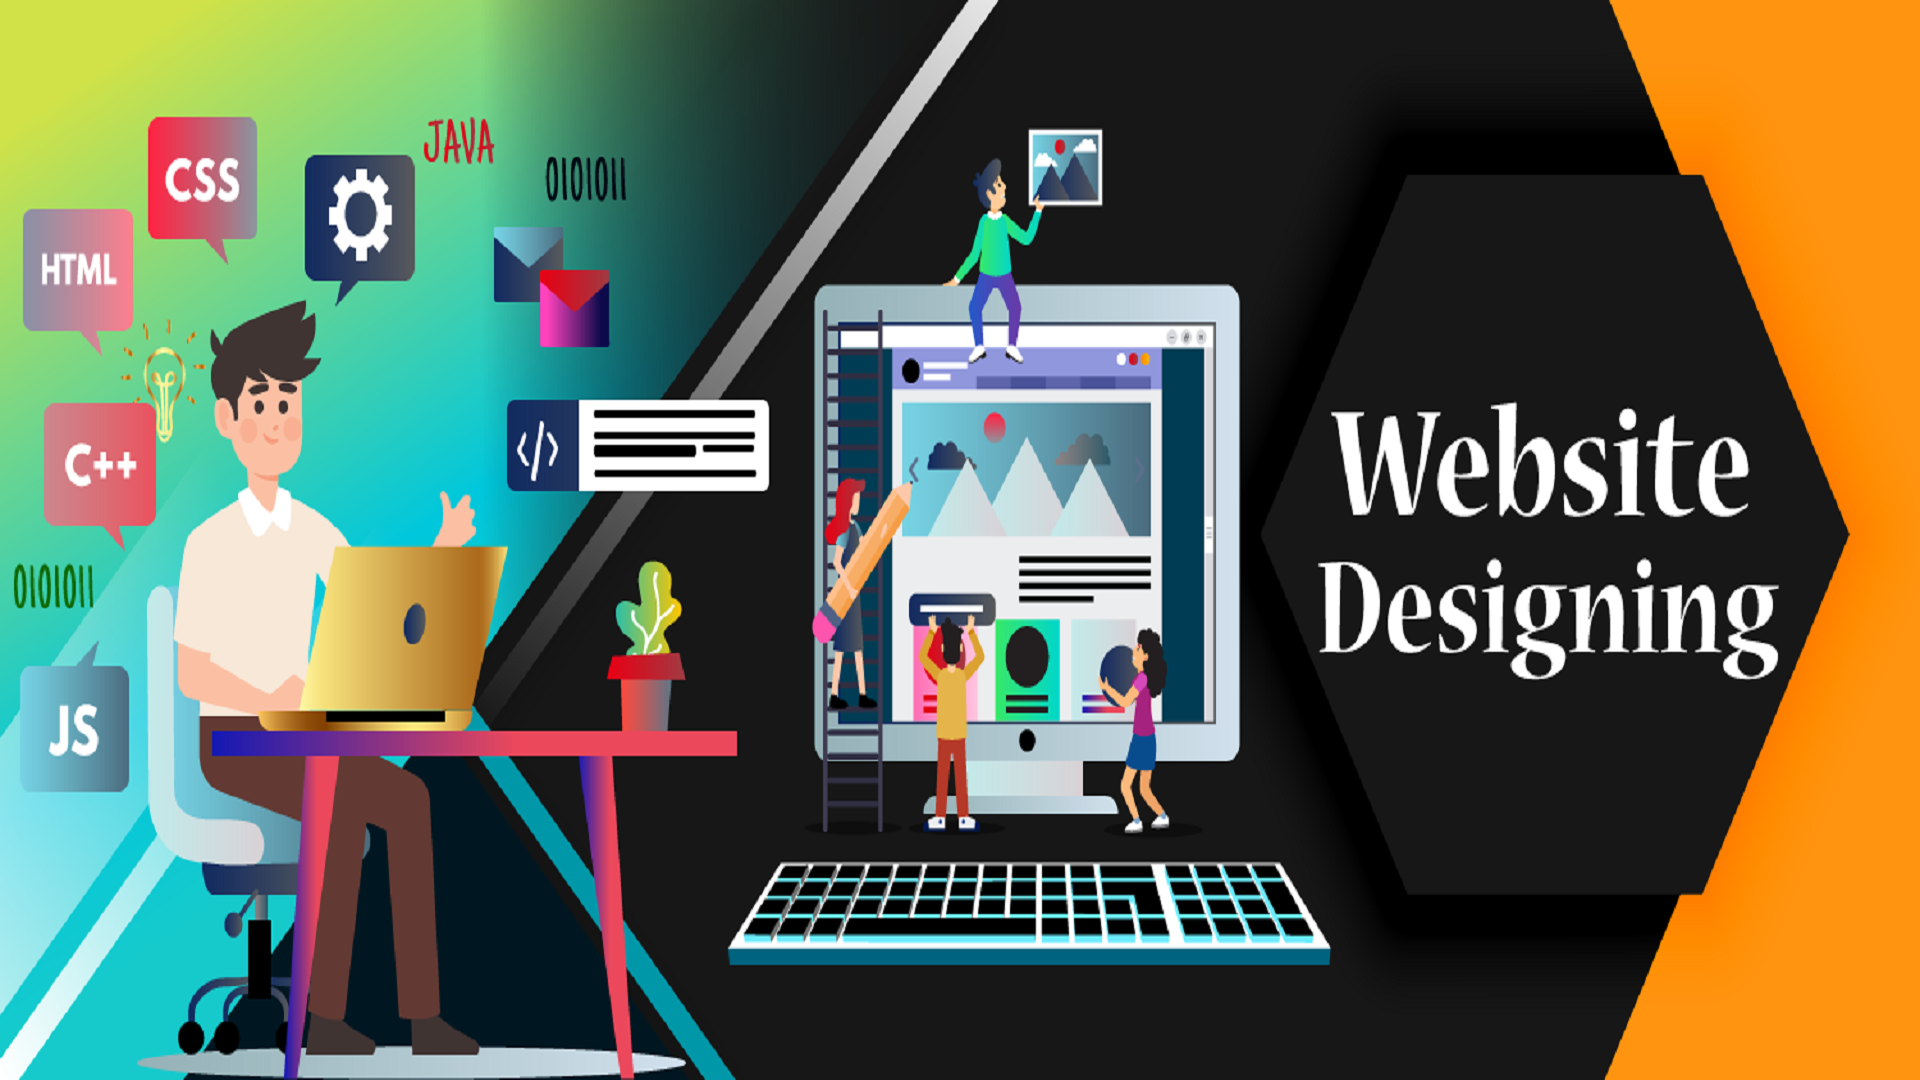 website designing companies in Jaipur, Rajasthan & Delhi NCR